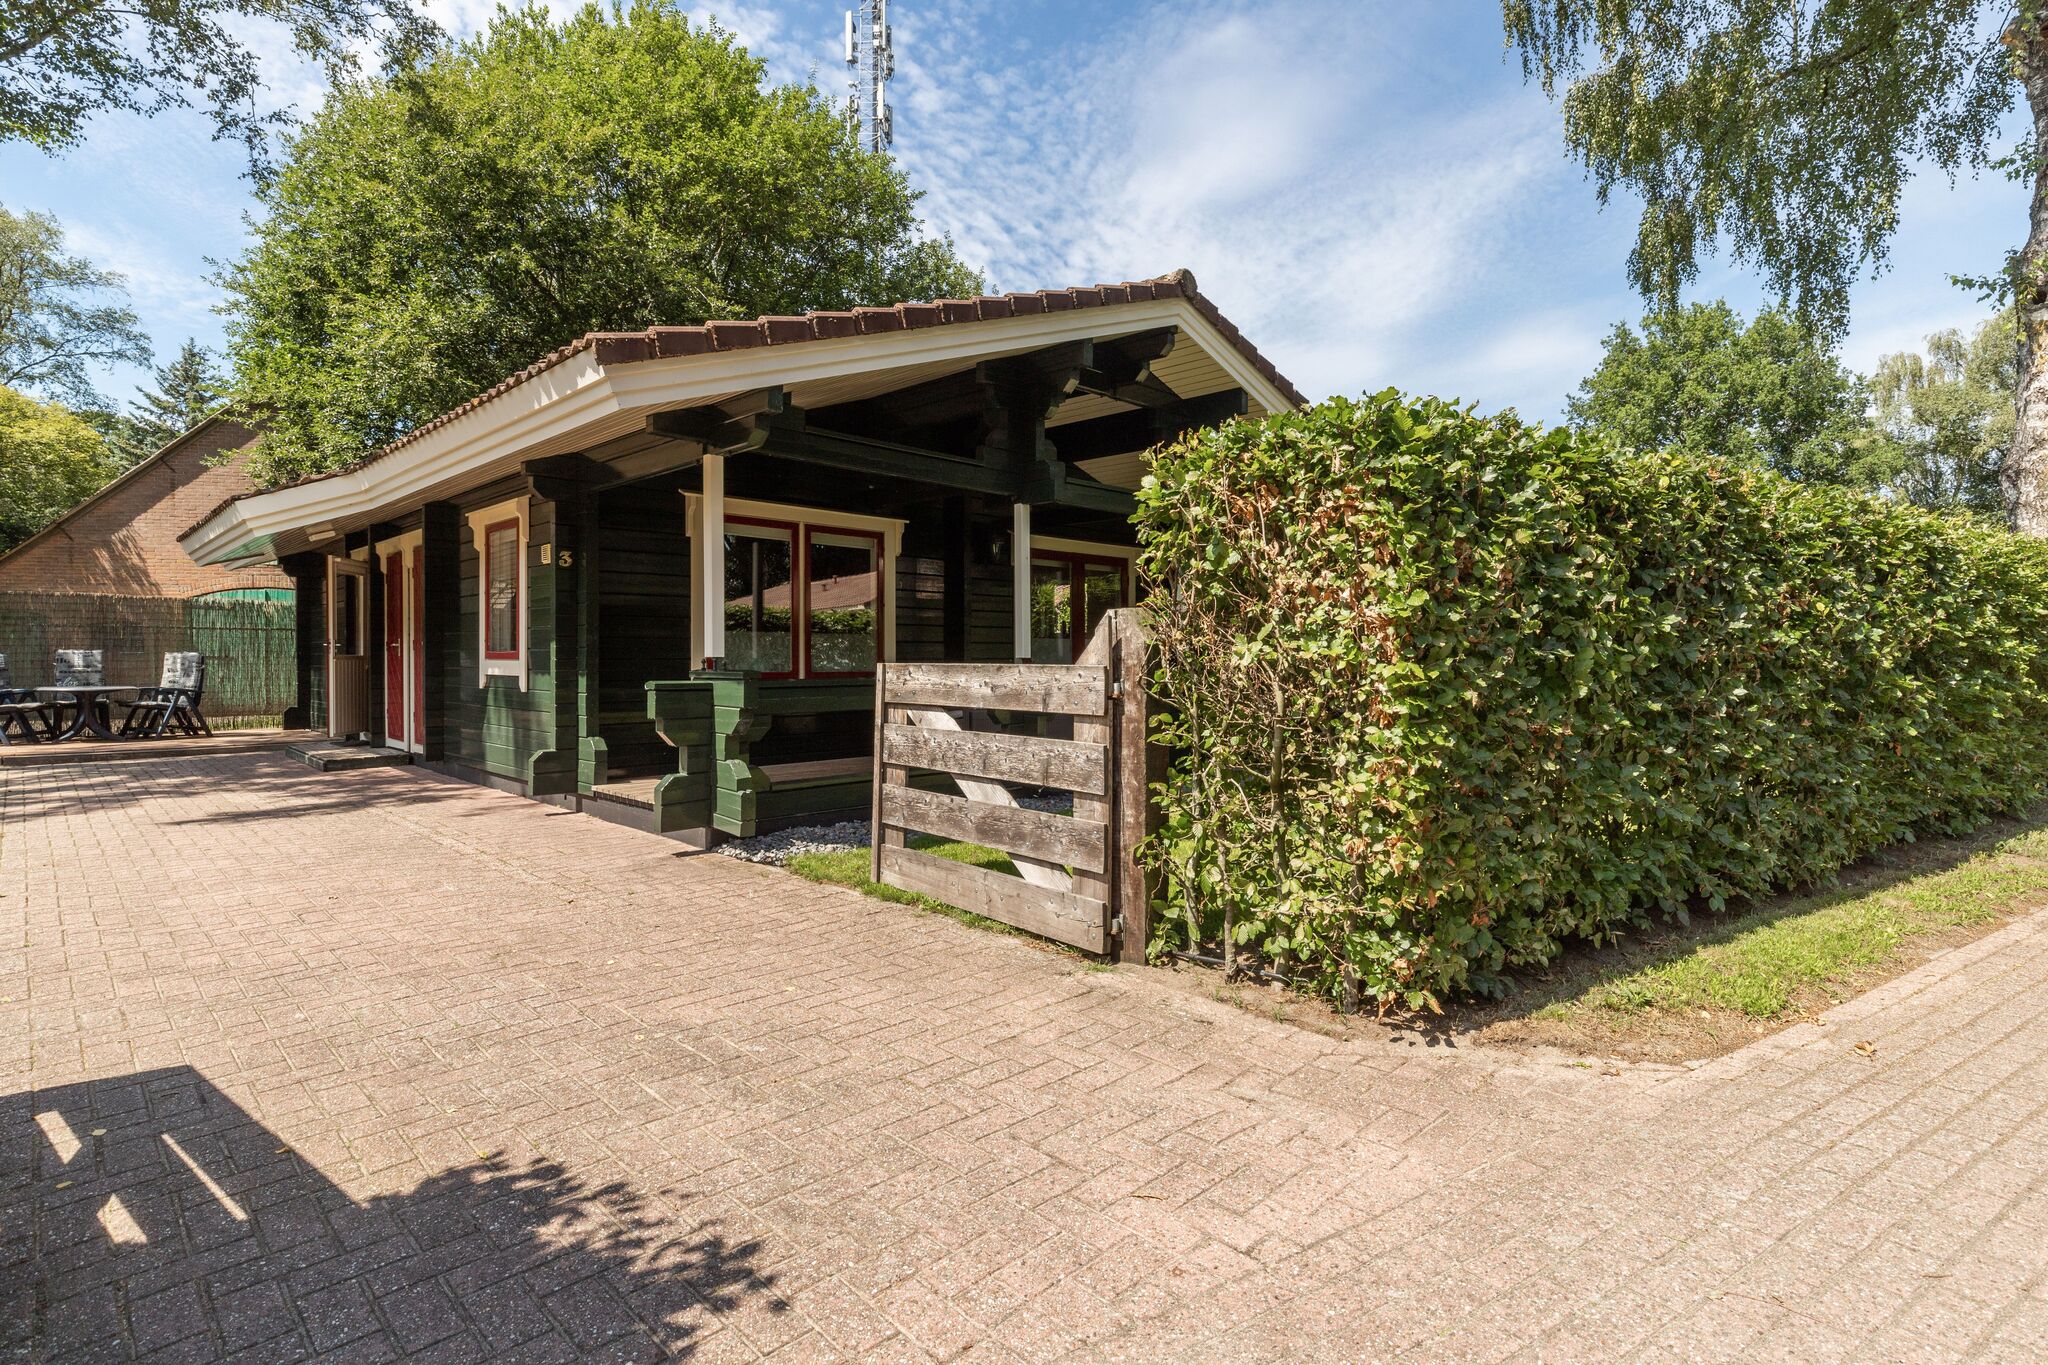 Vrijstaande bungalow in de Veluwe met een omheinde tuin